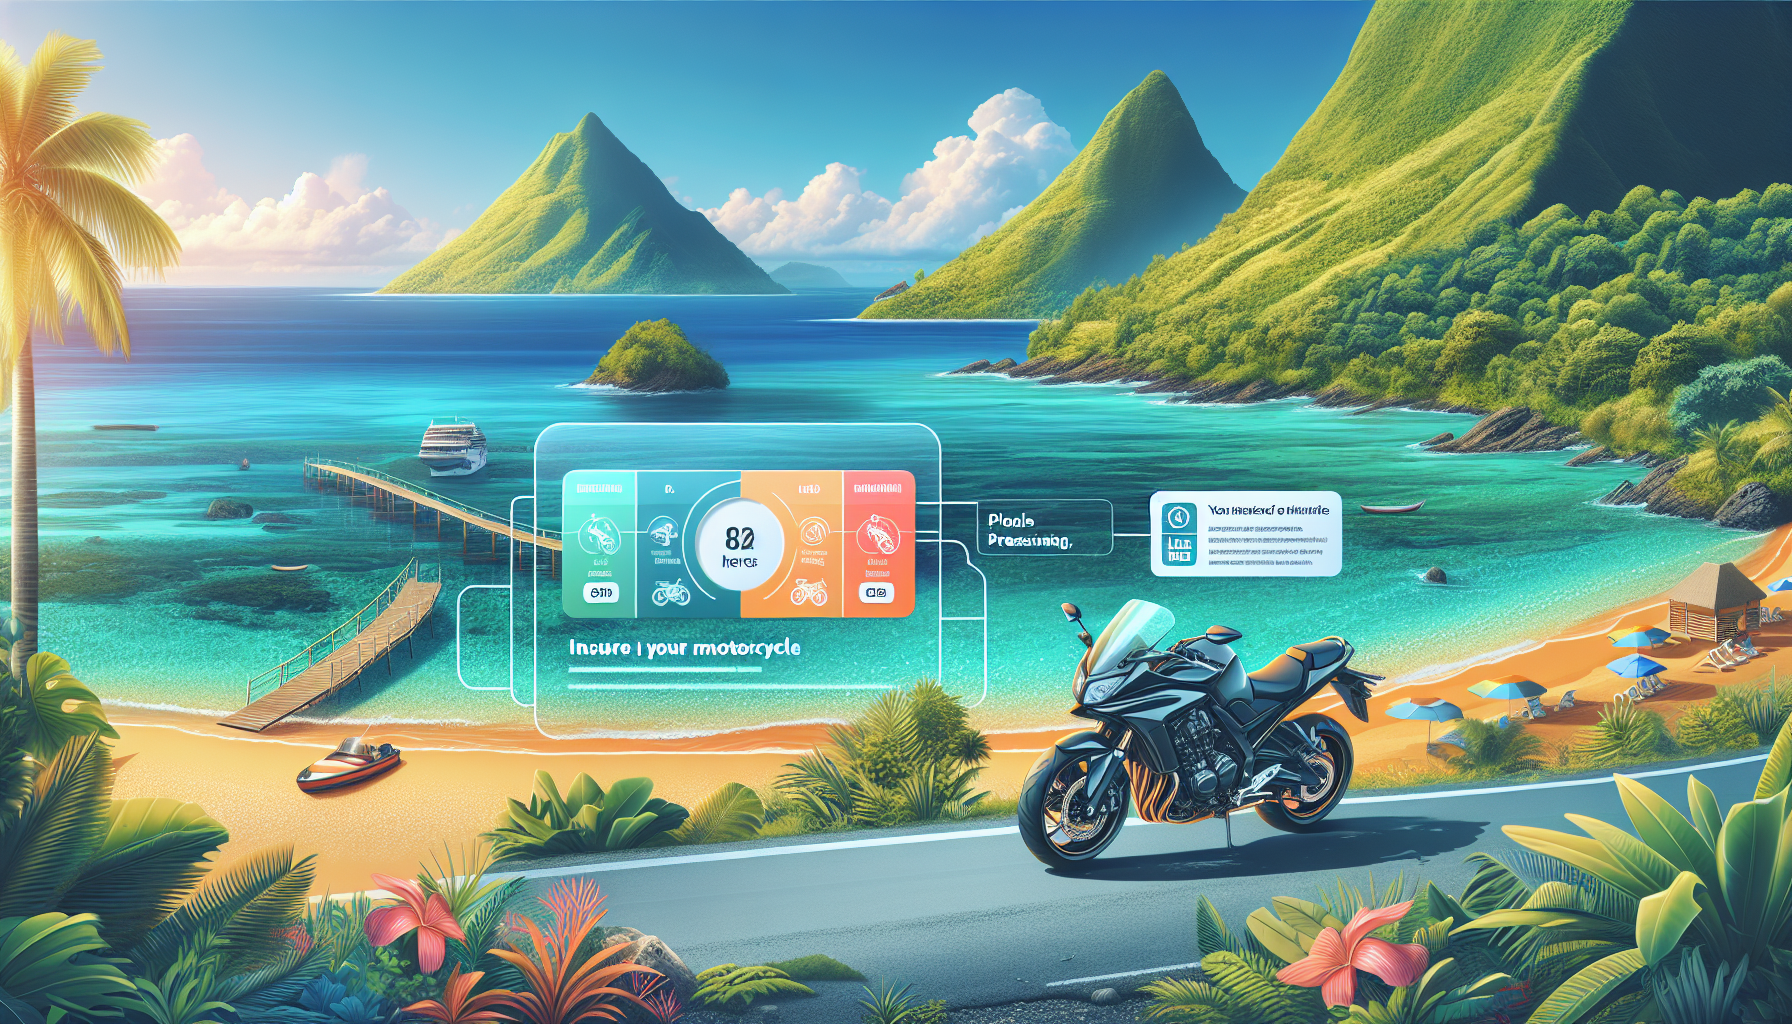 découvrez les étapes à suivre pour assurer votre moto à la réunion et trouvez les meilleures solutions d'assurance moto sur l'île.